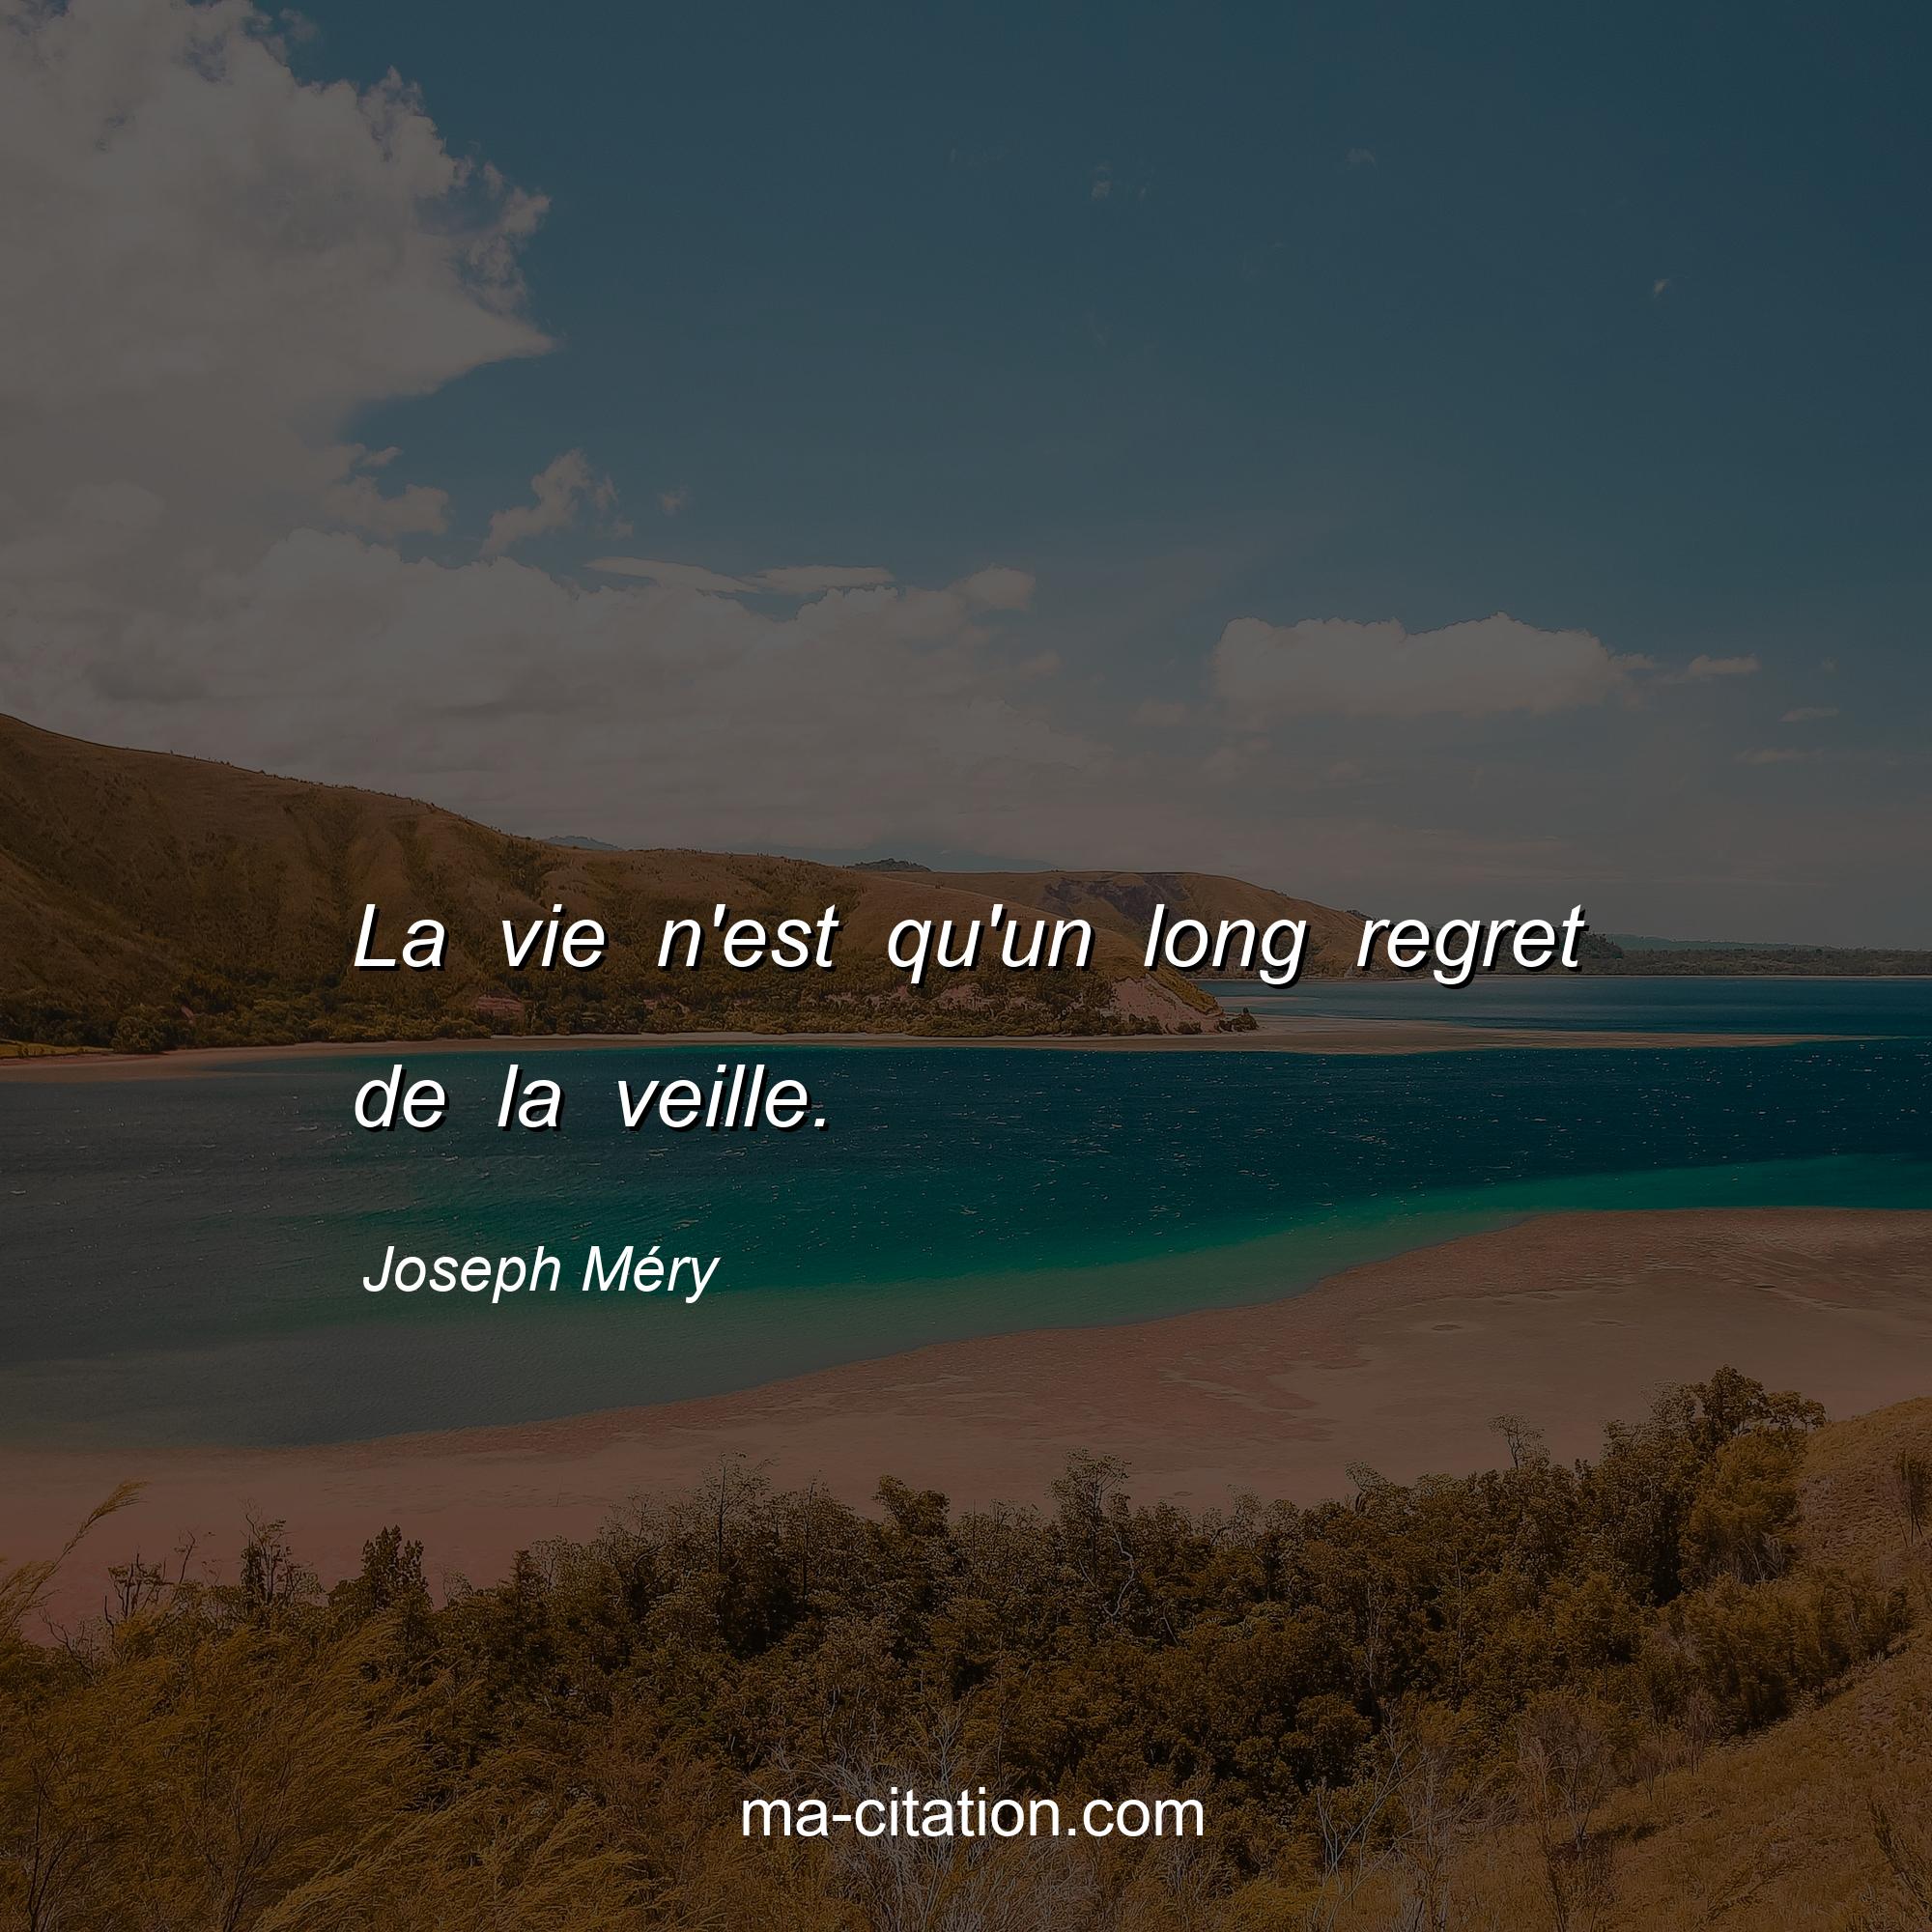 Joseph Méry : La vie n'est qu'un long regret de la veille.